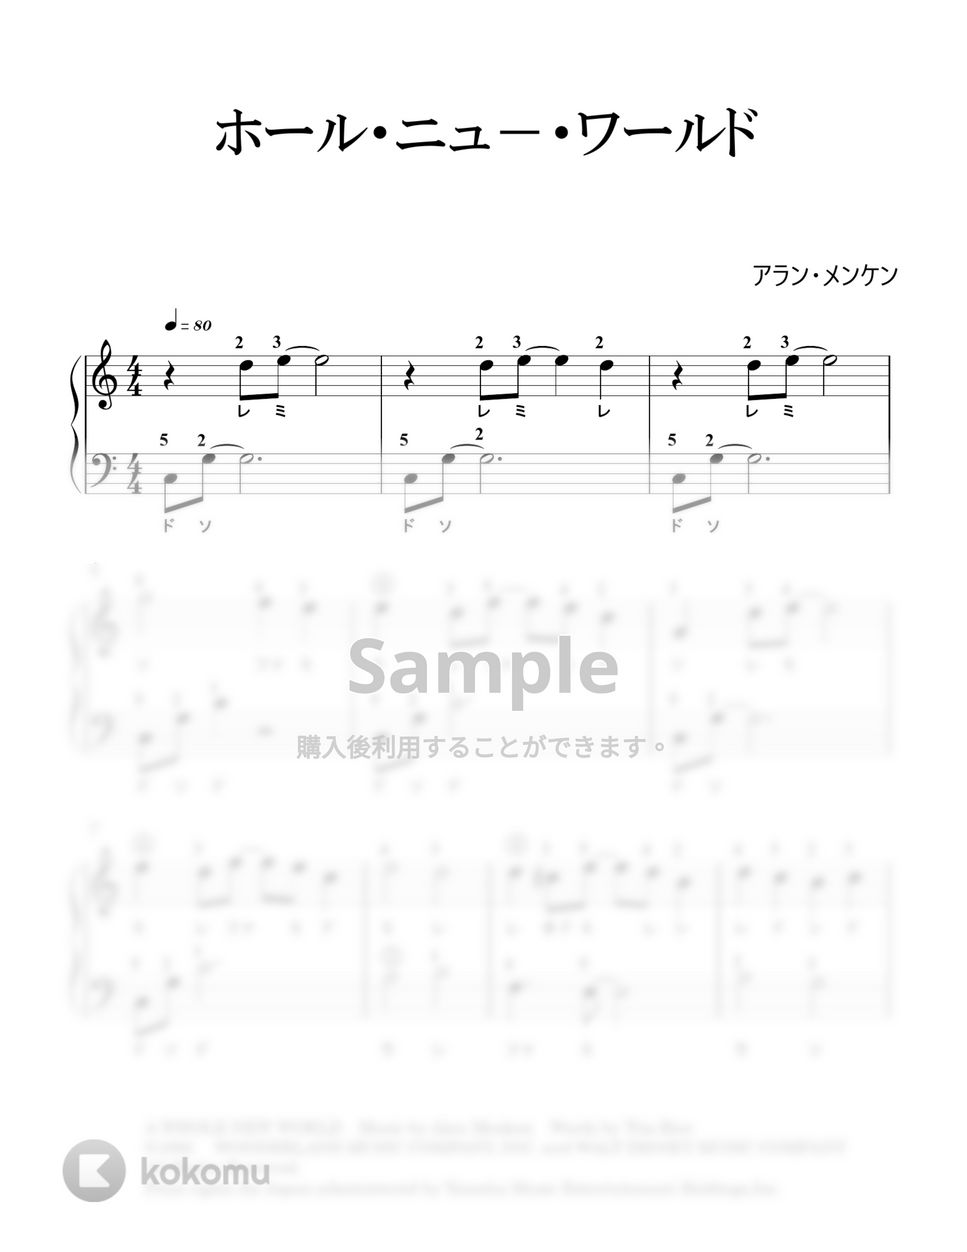 アラン・メンケン - ホール・ニュー・ワールド (ハ長調) by nokari88